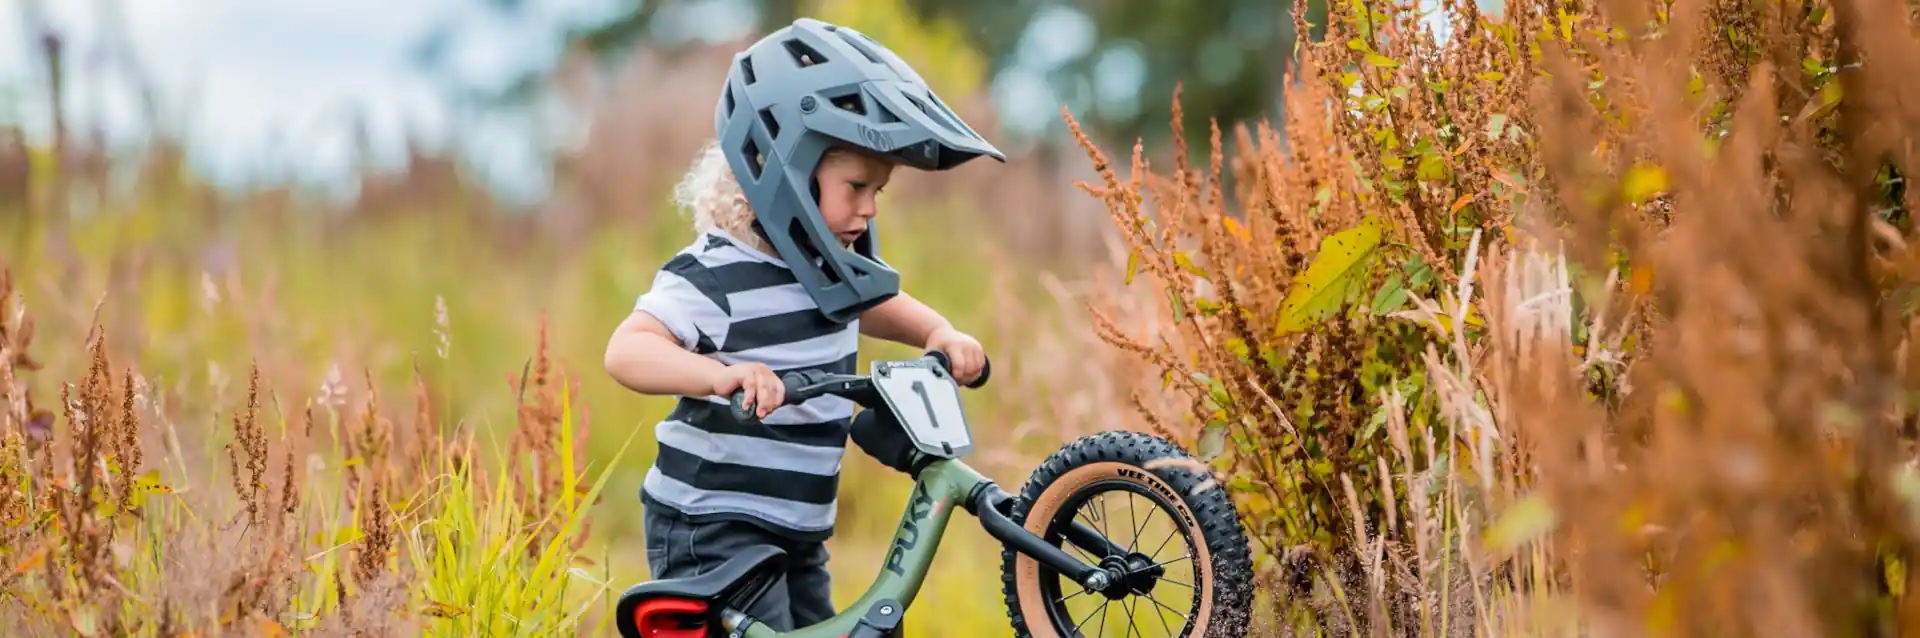 Kinderrad Puky kaufen im Biketech24 Fahrrad Onlineshop